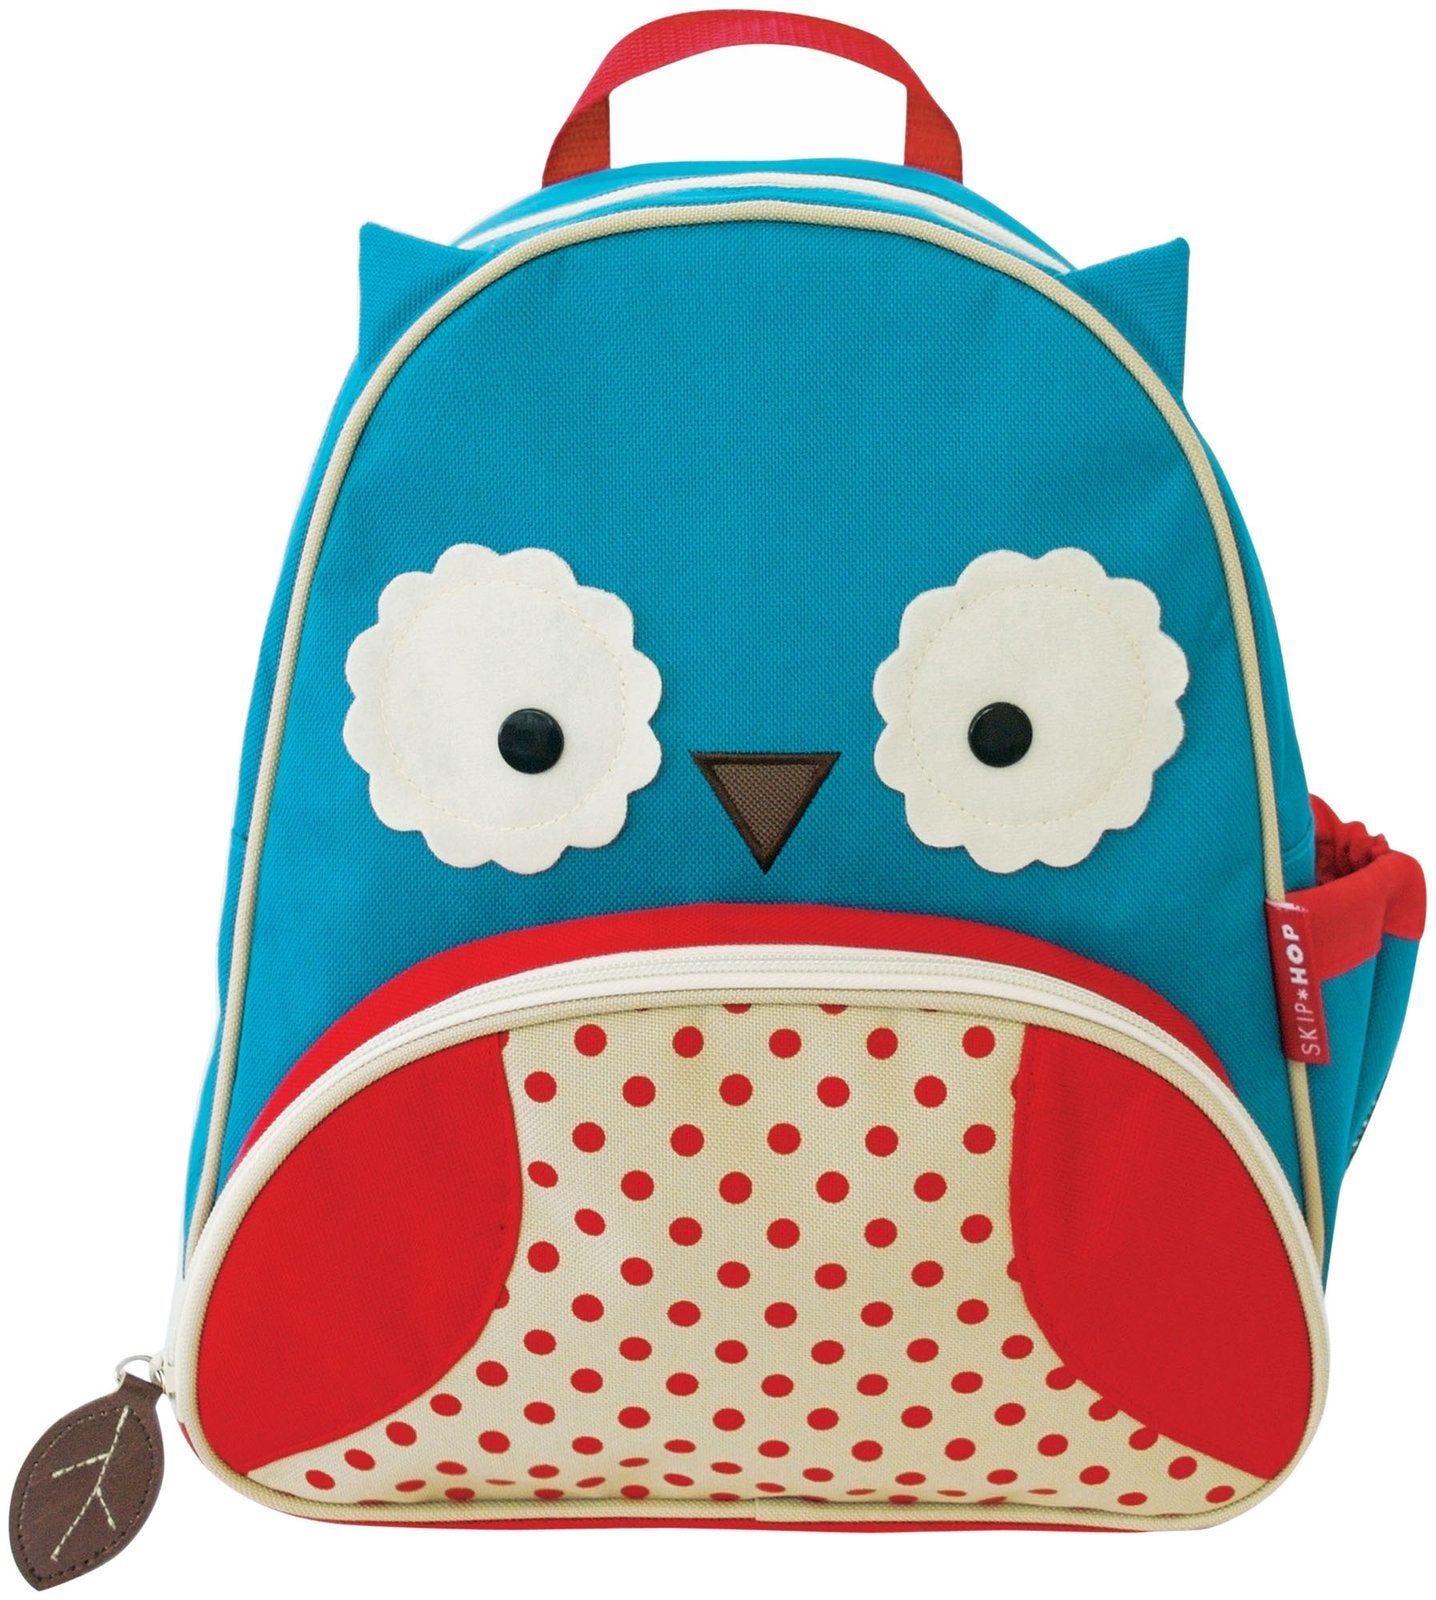 Skip Hop: Zoo Little Kid Backpack - Owl